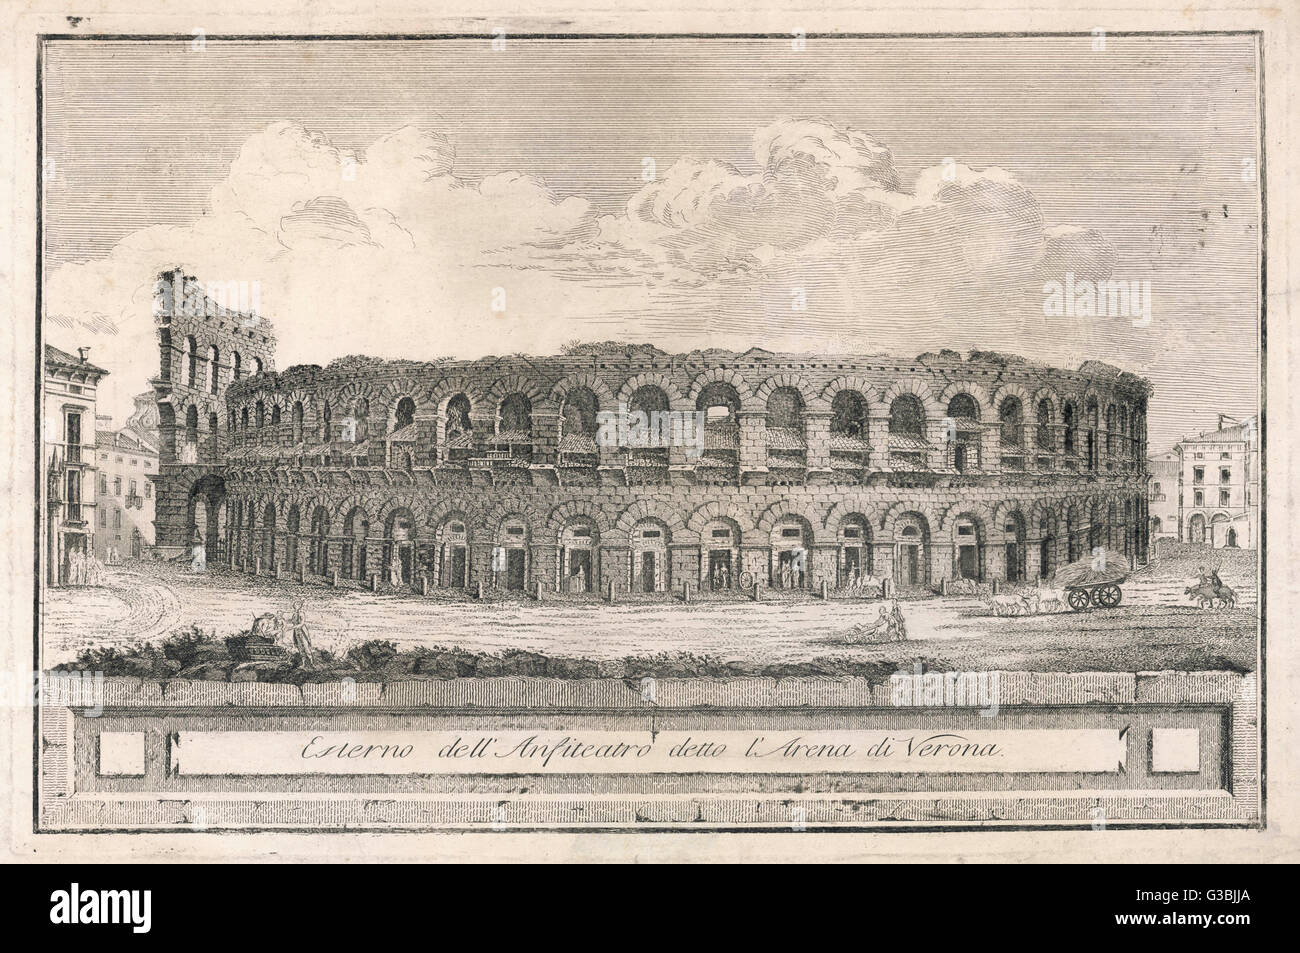 Blick auf das Amphitheater in Verona Datum: 18. Jahrhundert Stockfoto